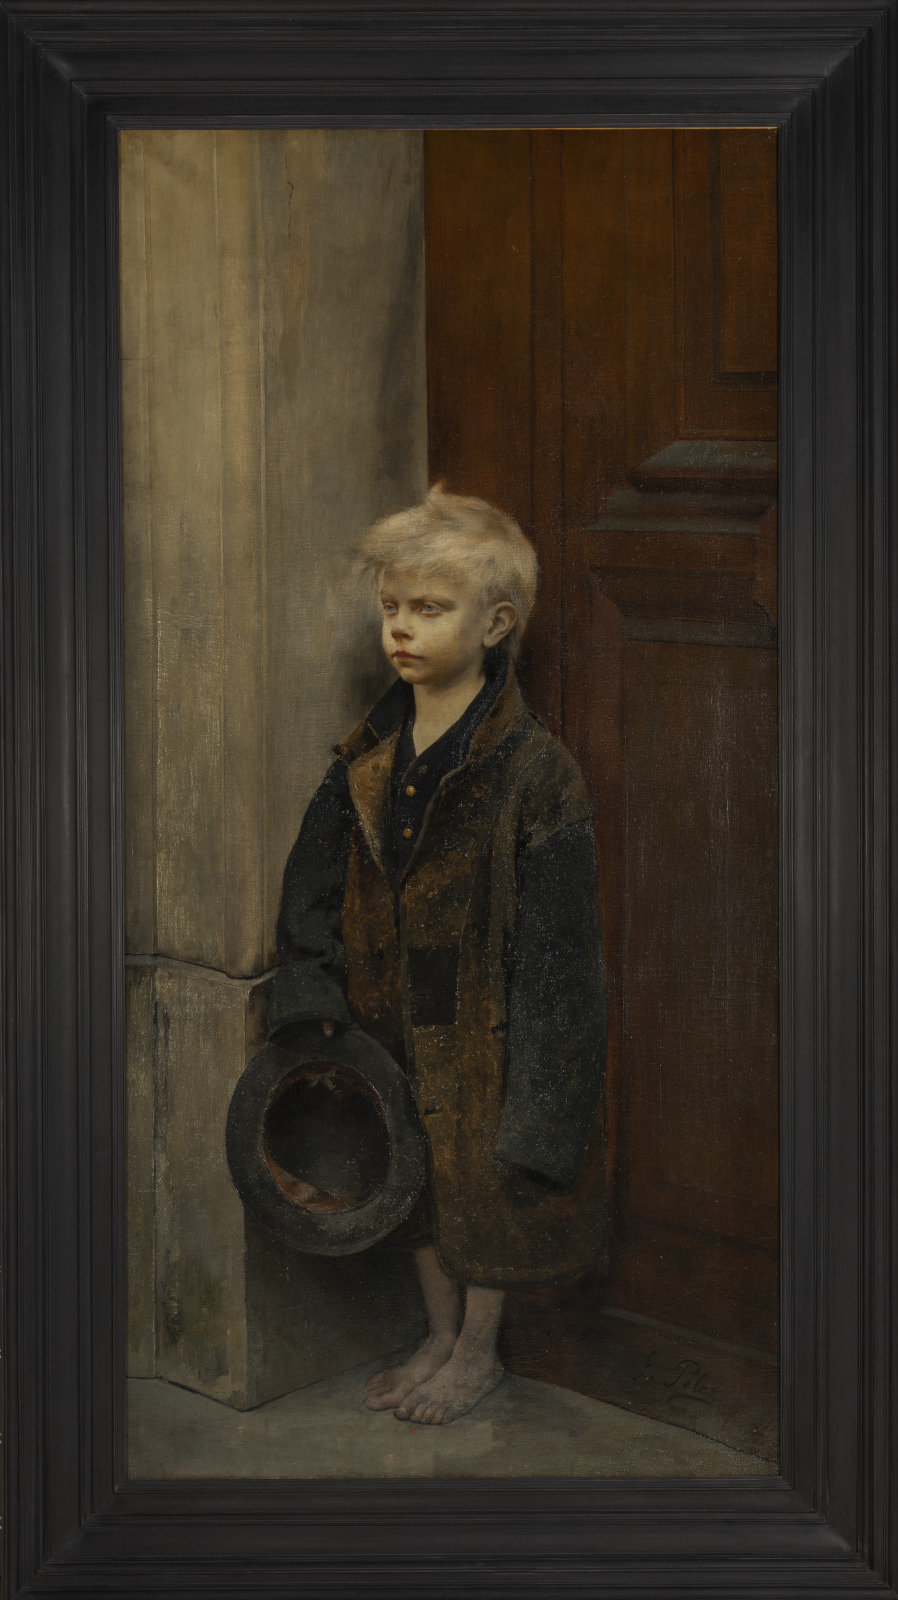 Fernand Pelez (1848-1913), Misère, vers 1886. Huile sur toile, 156,2 x 78,7 cm. Paris, musée d’Orsay. Photo service de presse. © Musée d’Orsay, dist. RMN-Grand Palais / Sophie Crépy